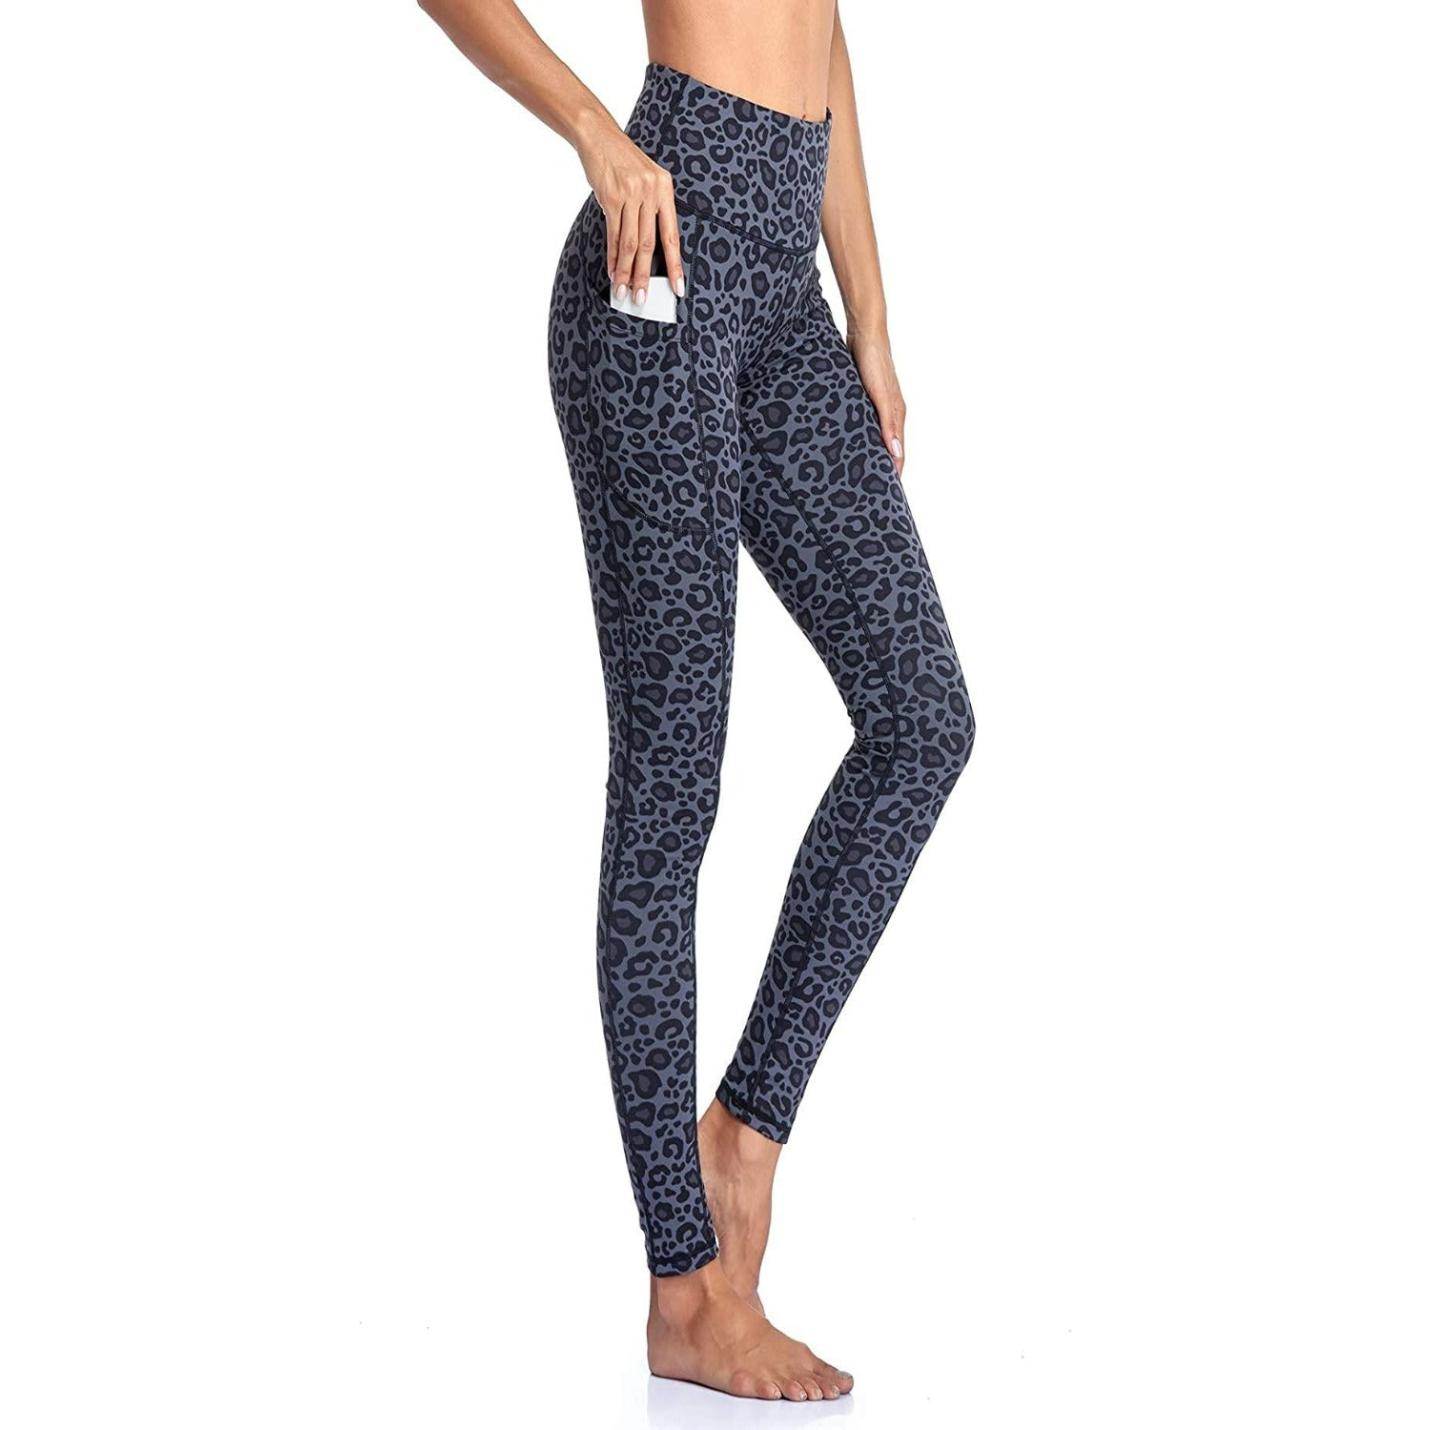 Hoge taille legging voor dames, perfect voor yoga, fitness en sportactiviteiten